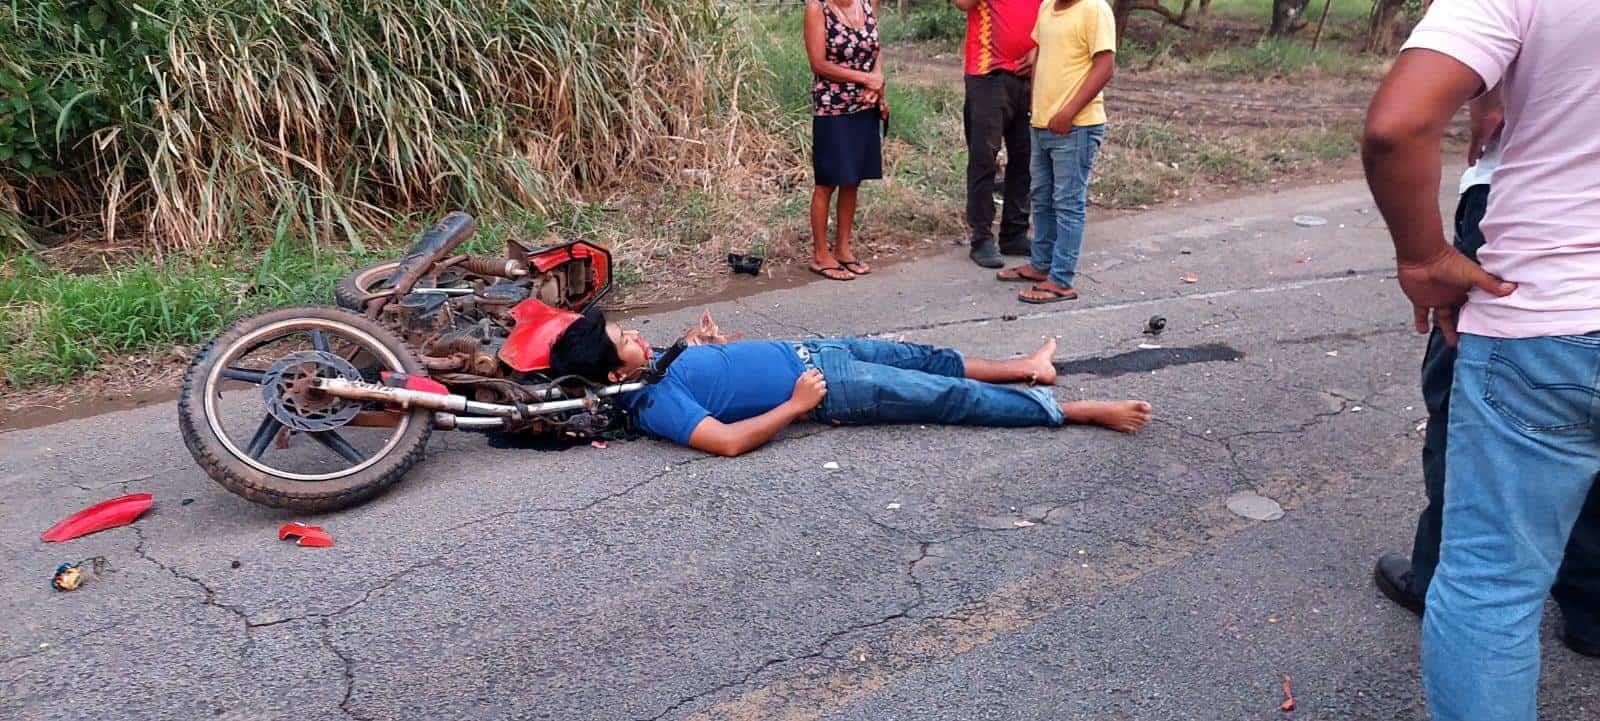 Dos muertos en aparatoso choque de motos en camino Jicacal-Pajapan 